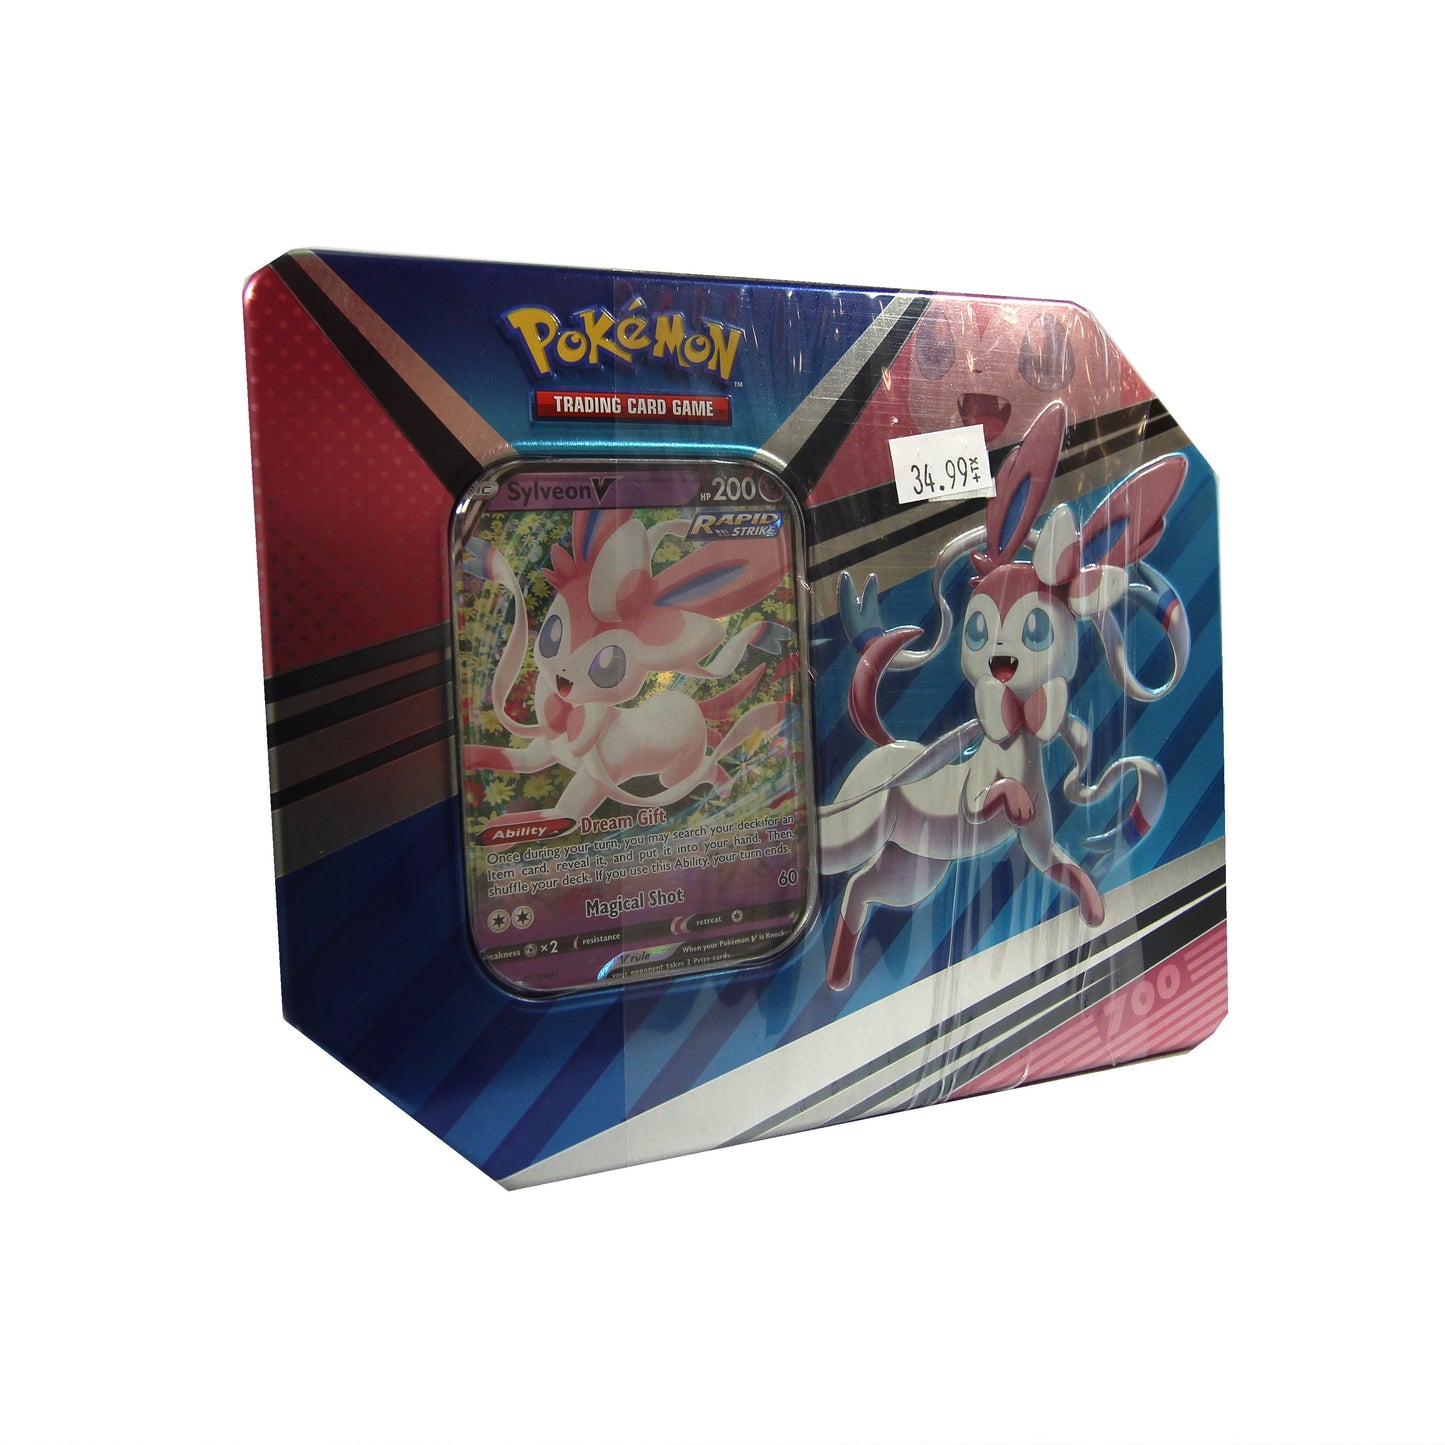 Pokémon Sylveon V Tin Box 700